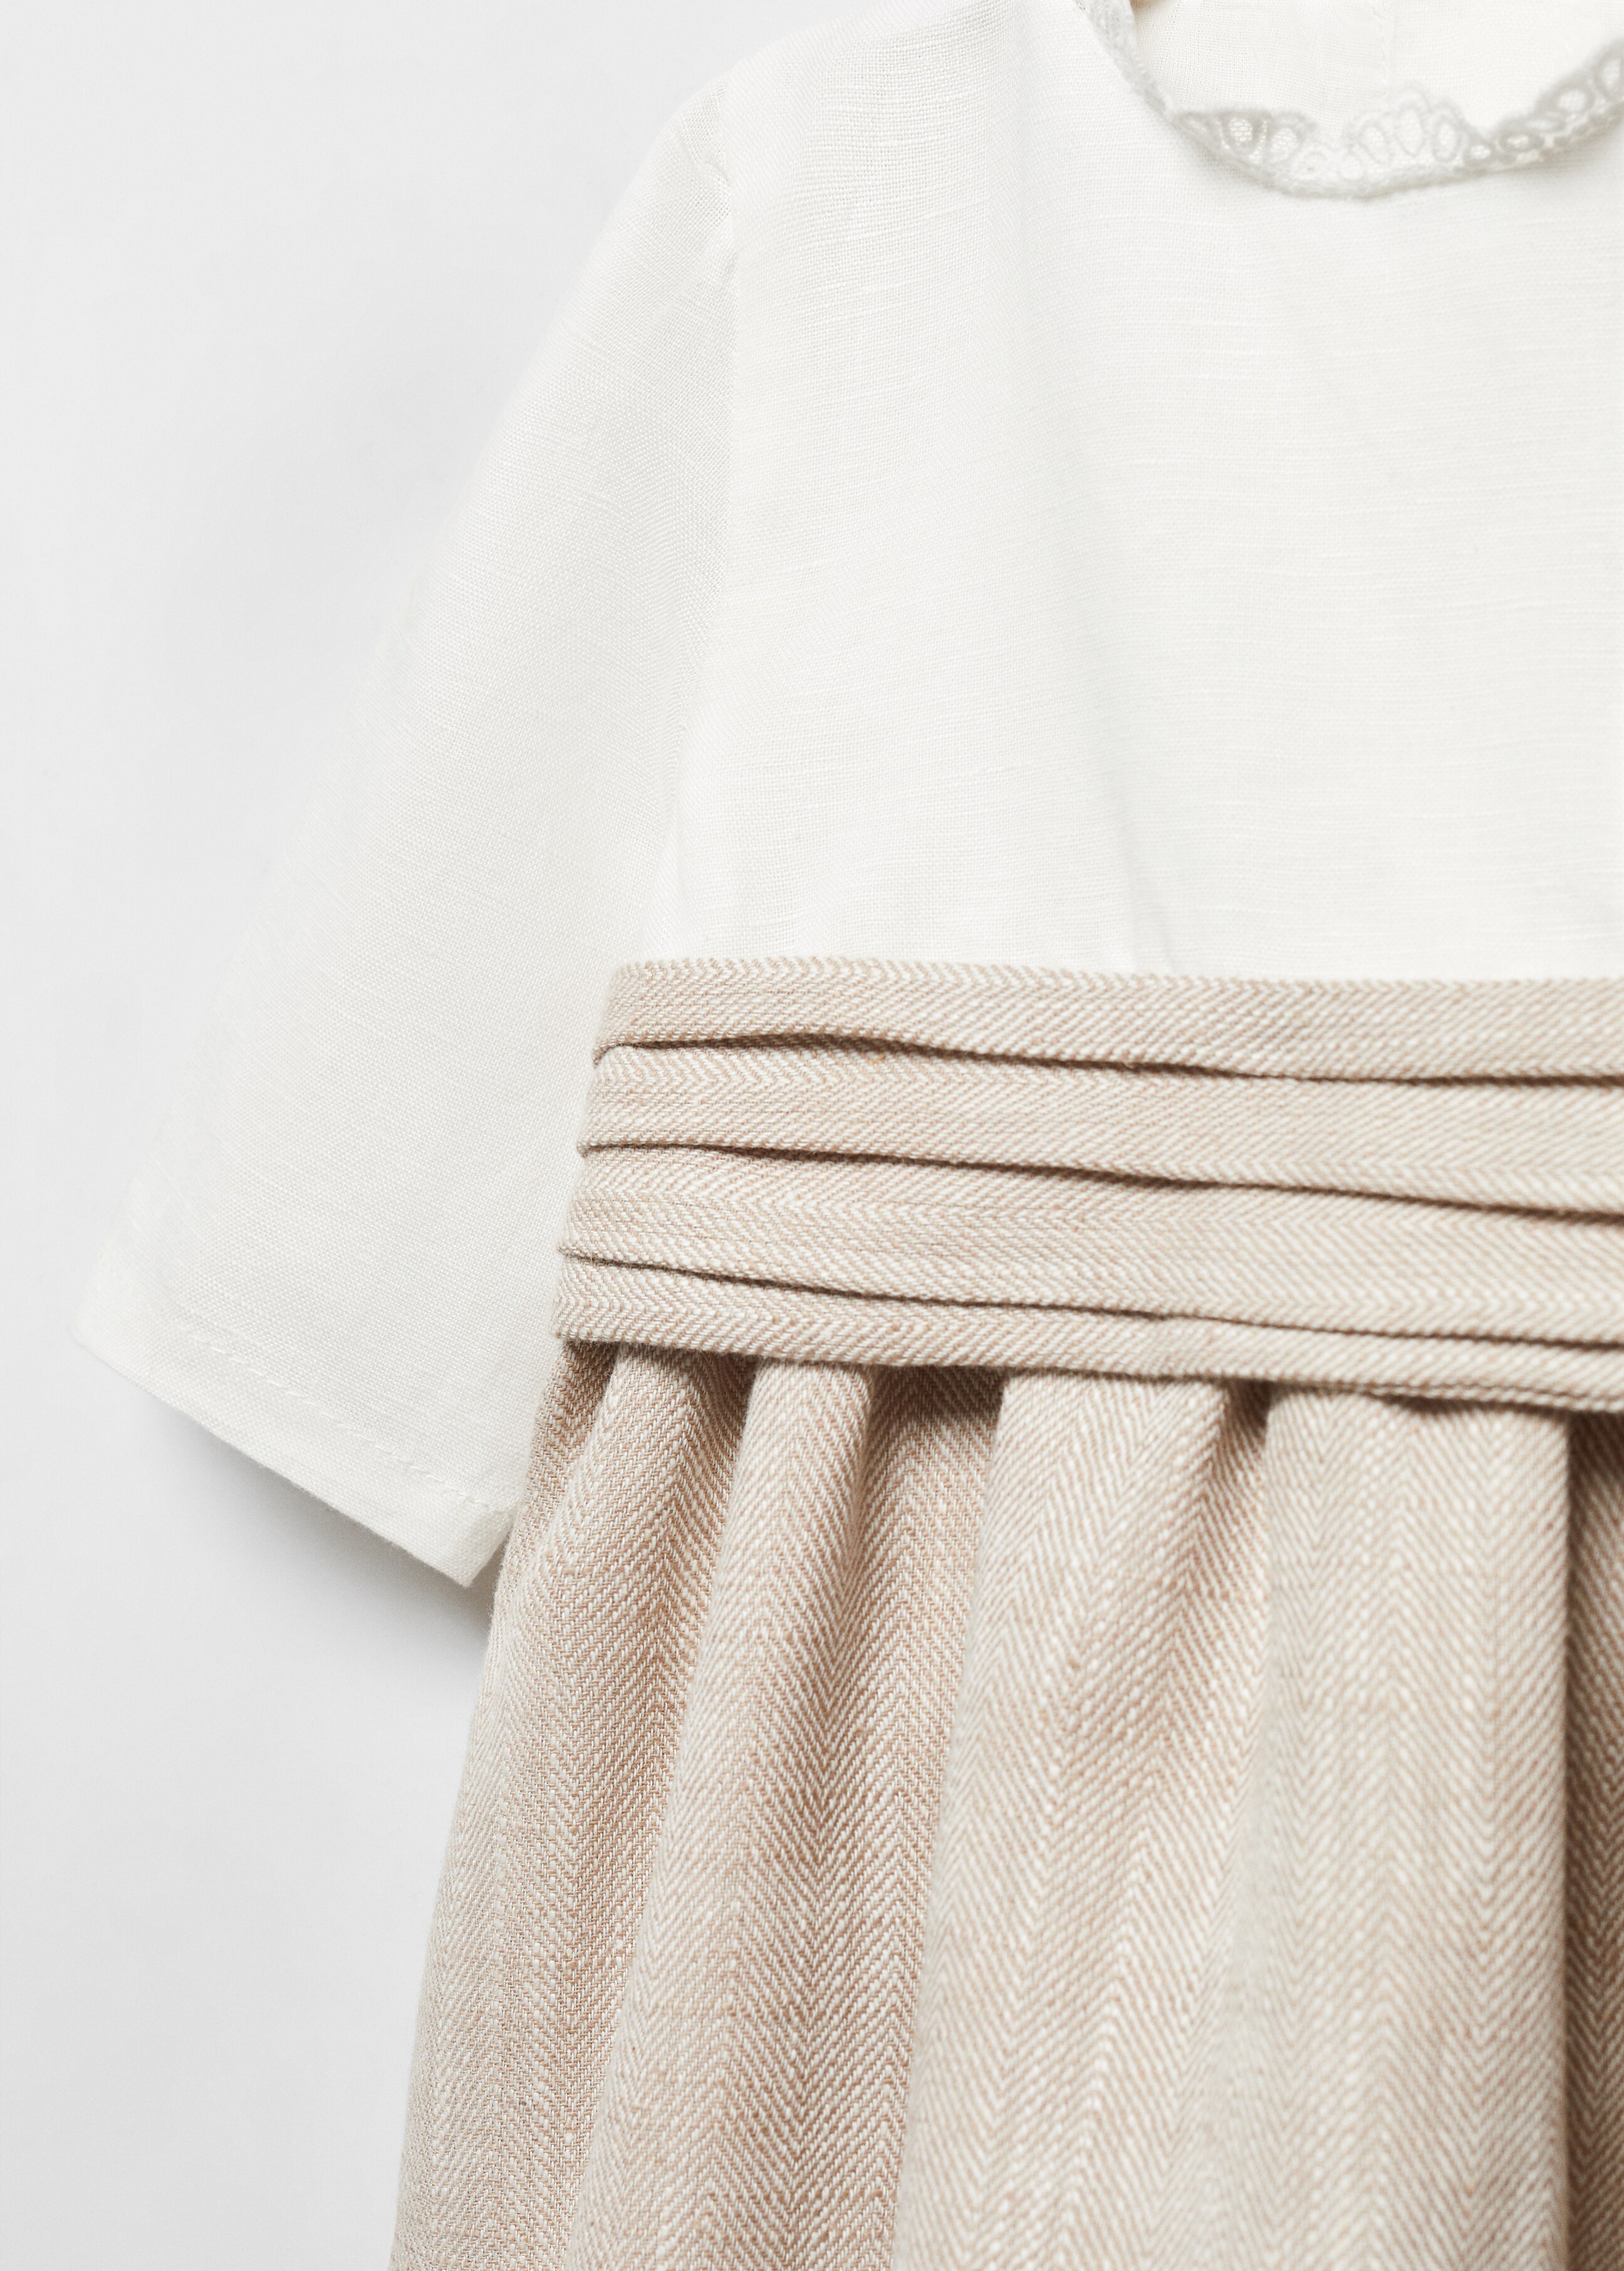 Linen-cotton dress - Details of the article 8